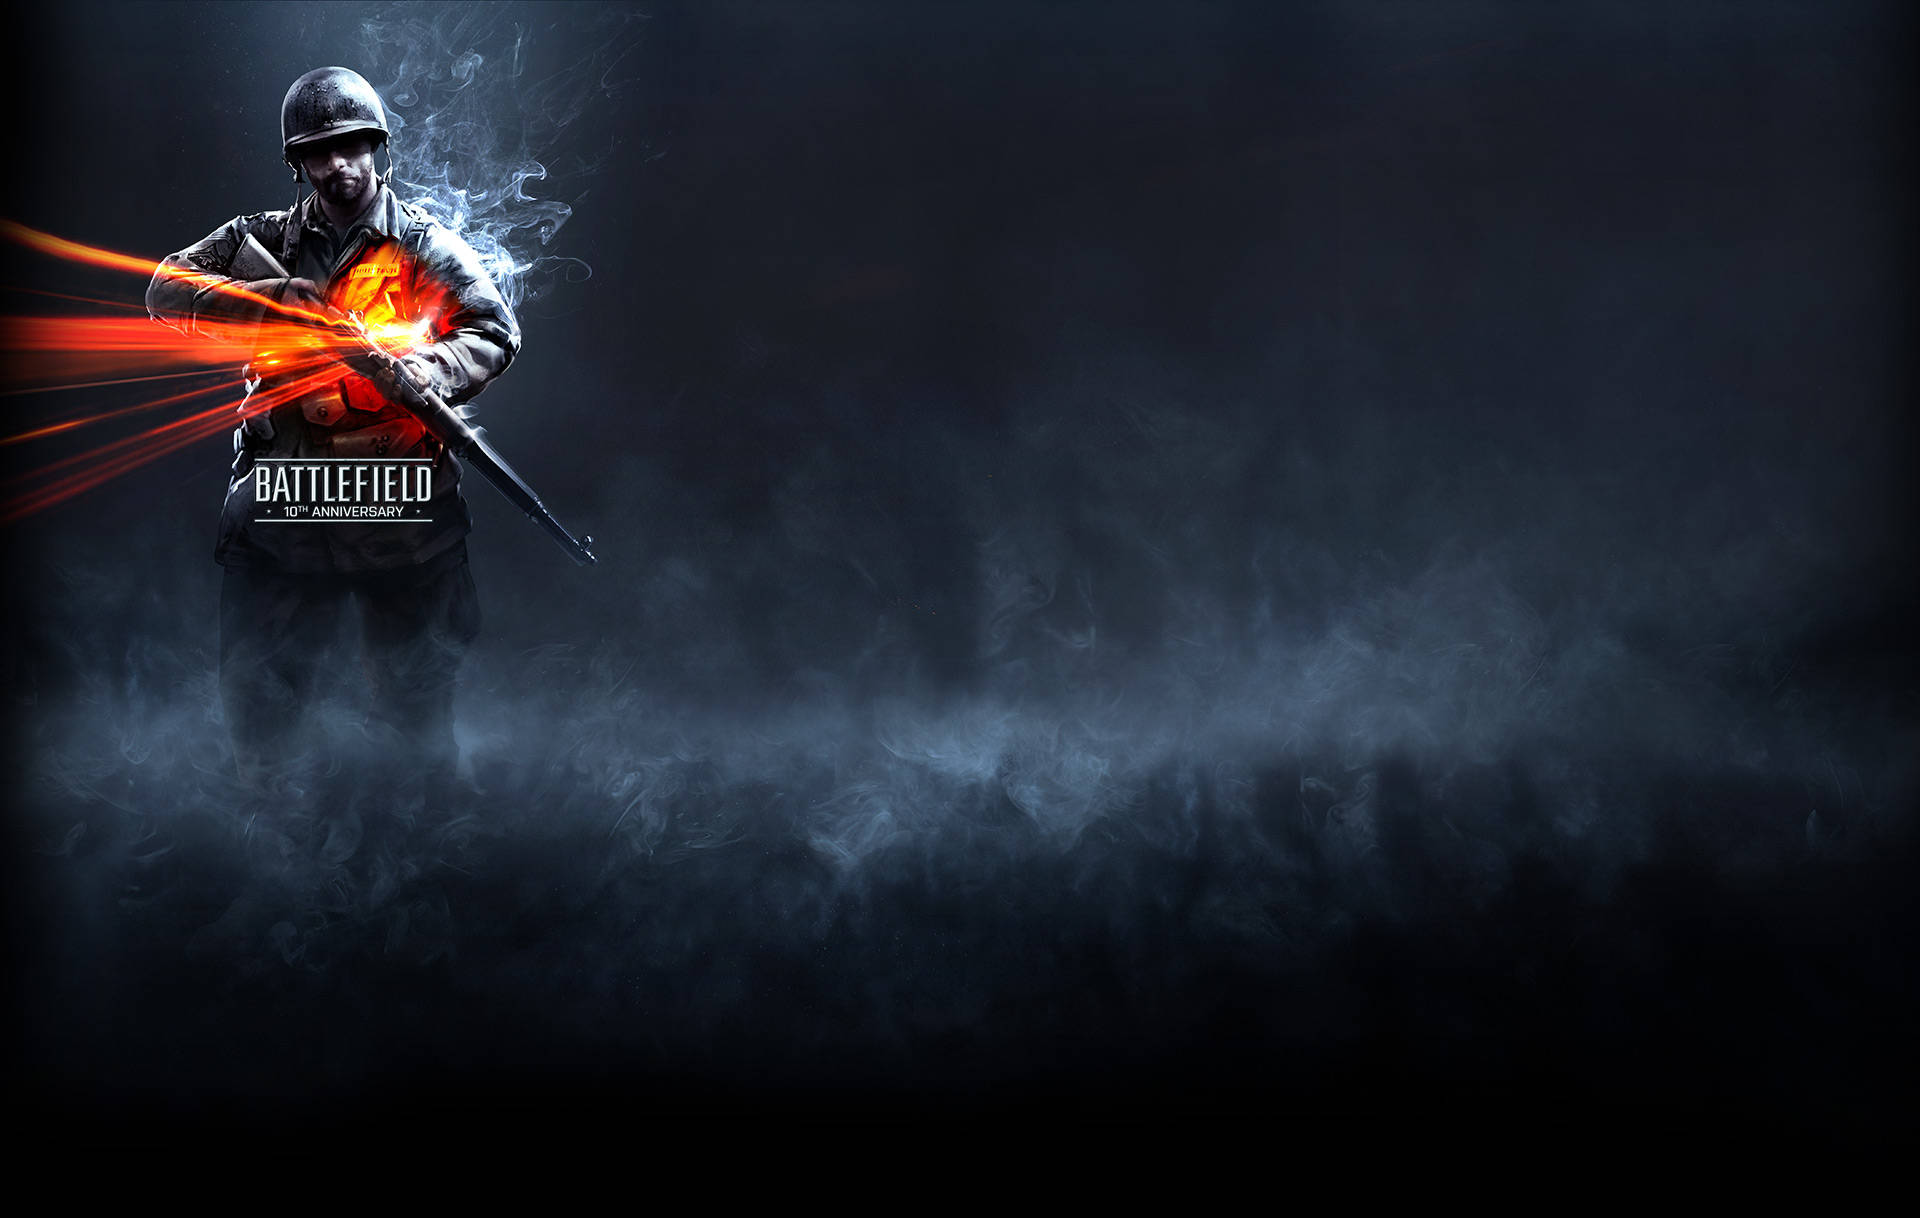 Battlefield 3 10th Anniversary Background